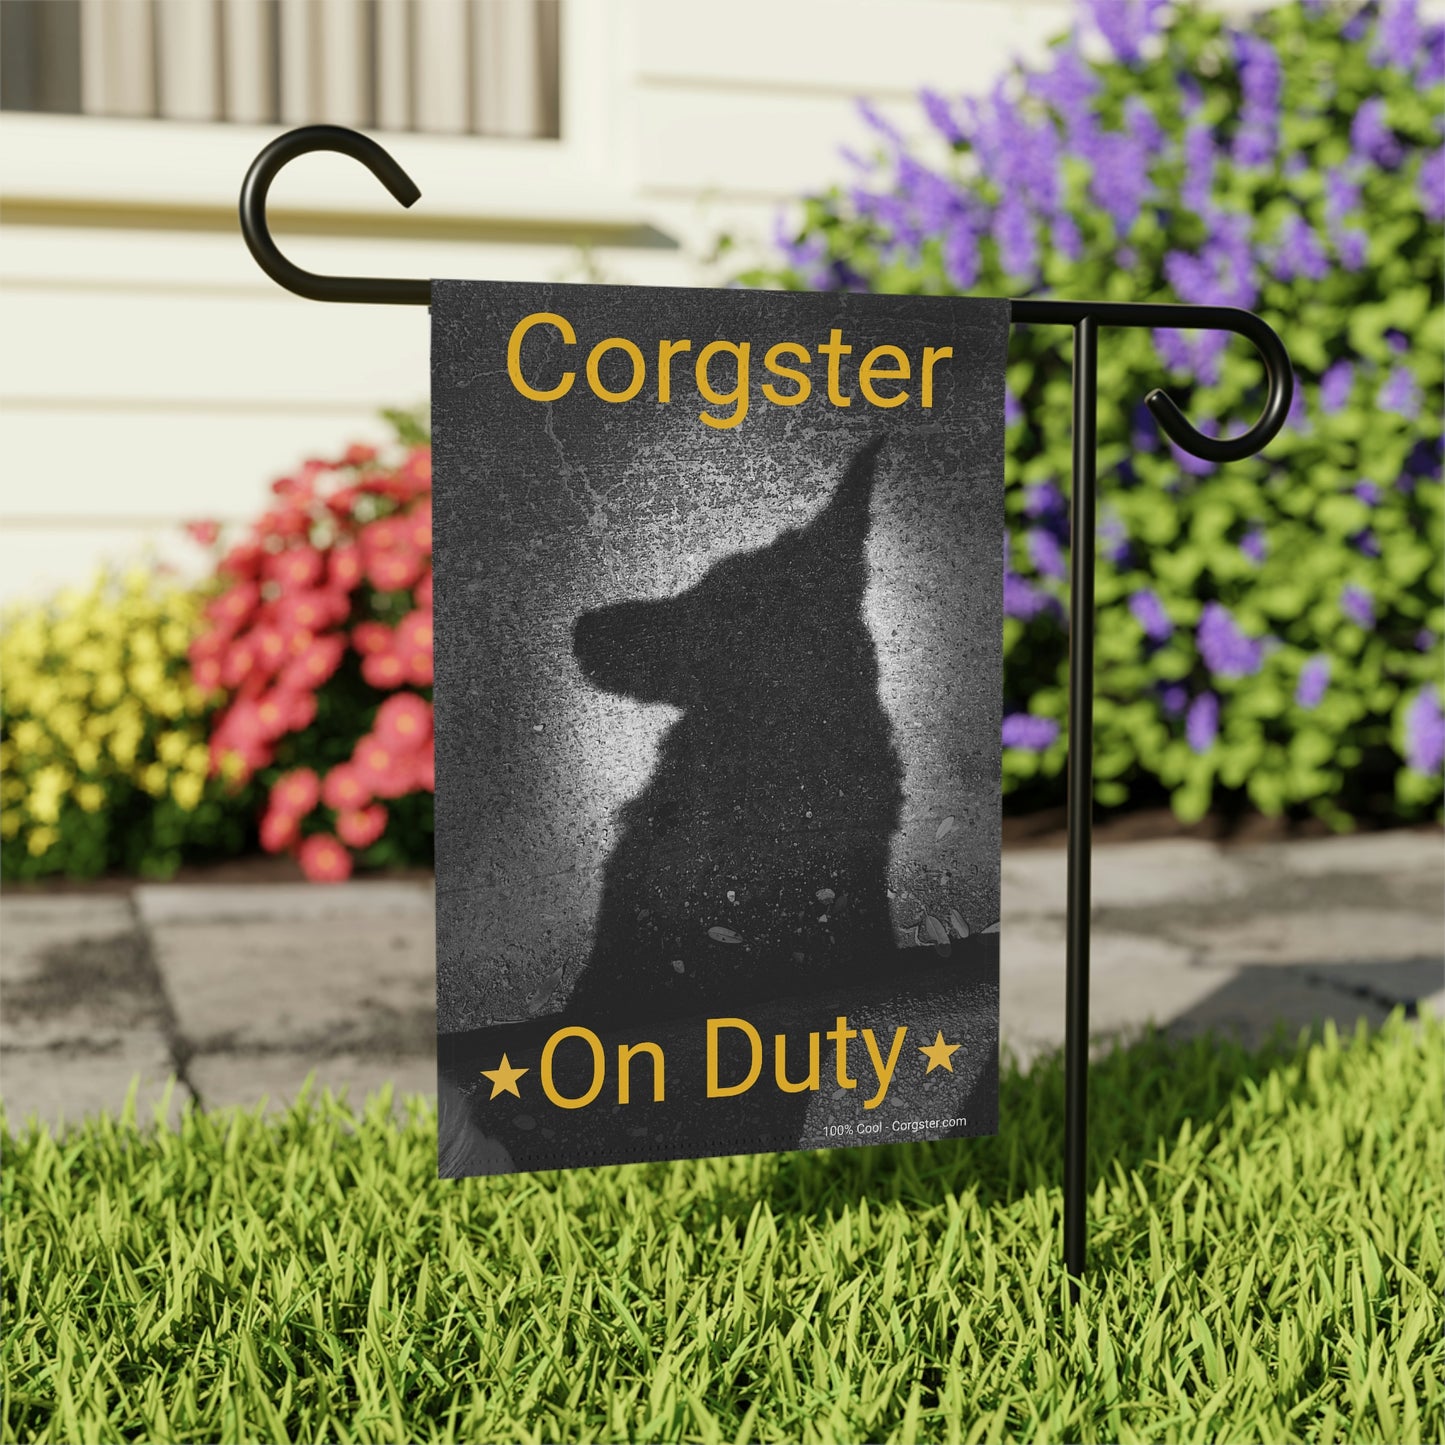 Corster On Duty - Corgi Garden & House Banner